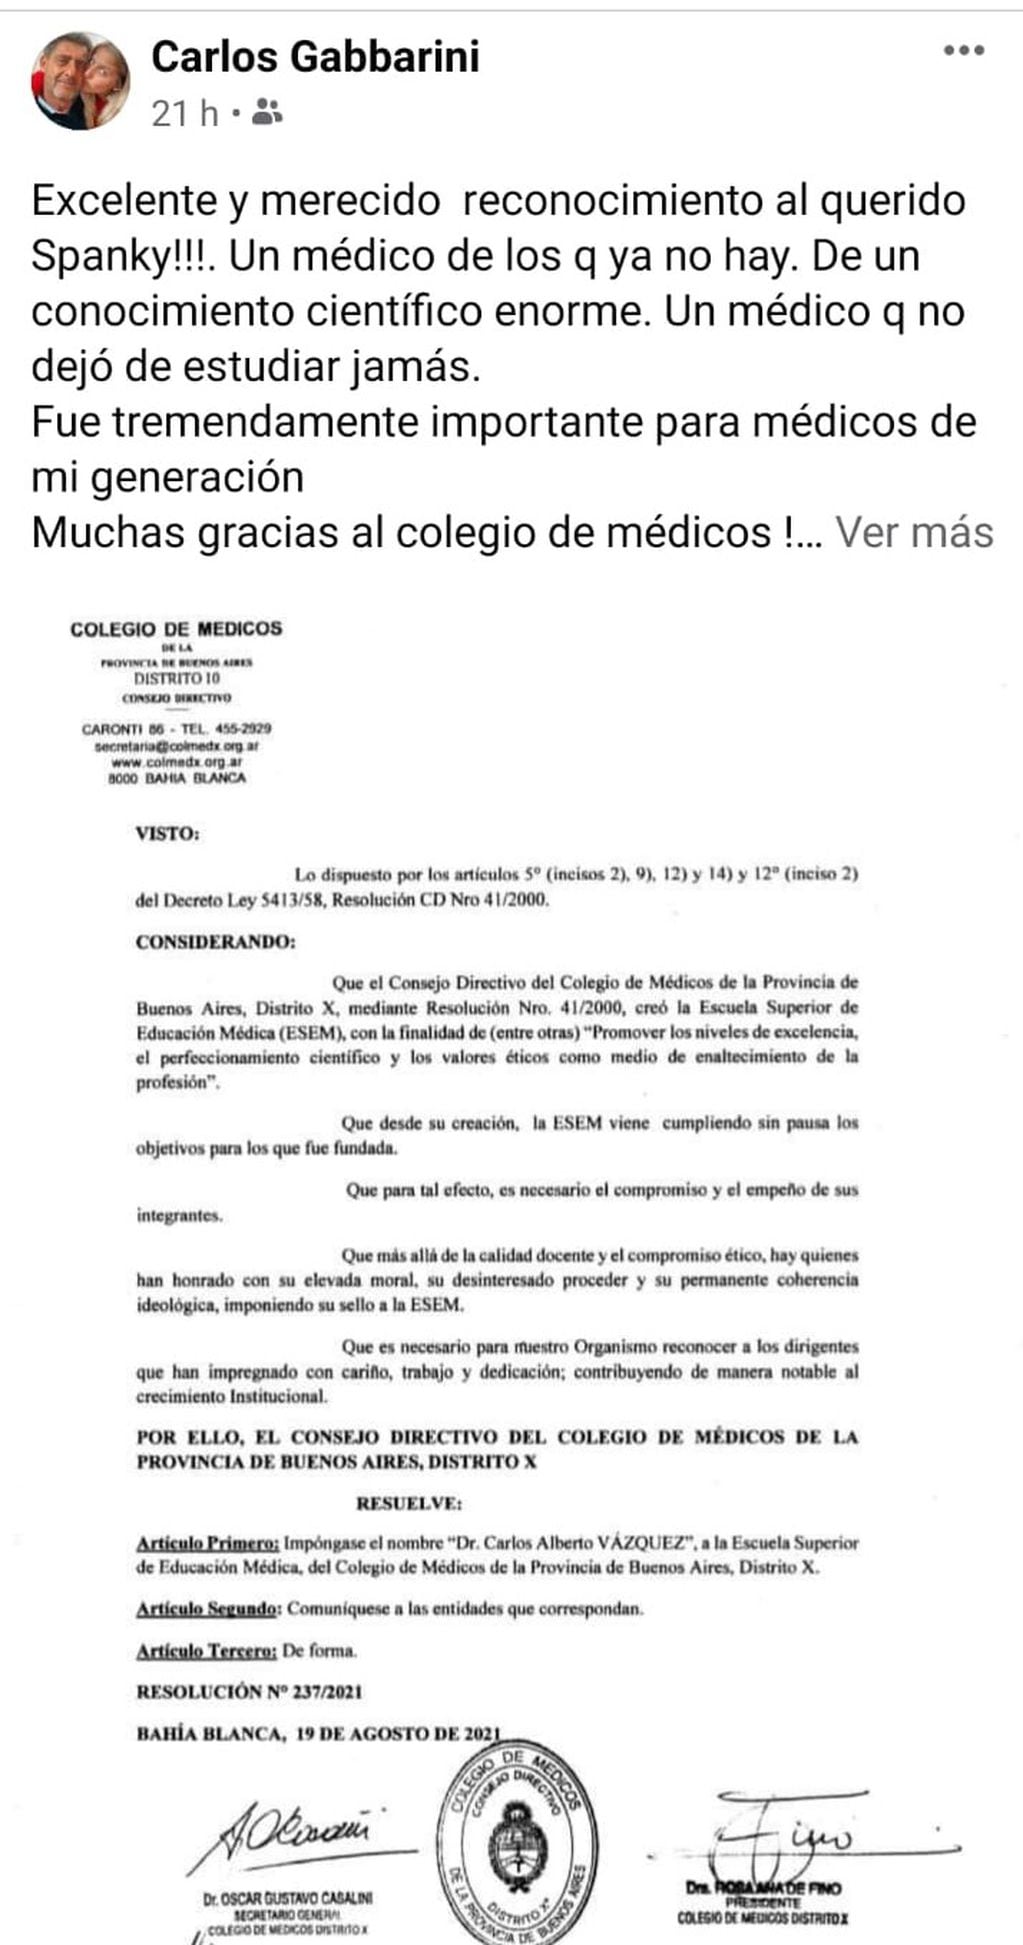 El secretario de Salud Carlos Gabbarini destacó la labor docente de Spanky Vázquez